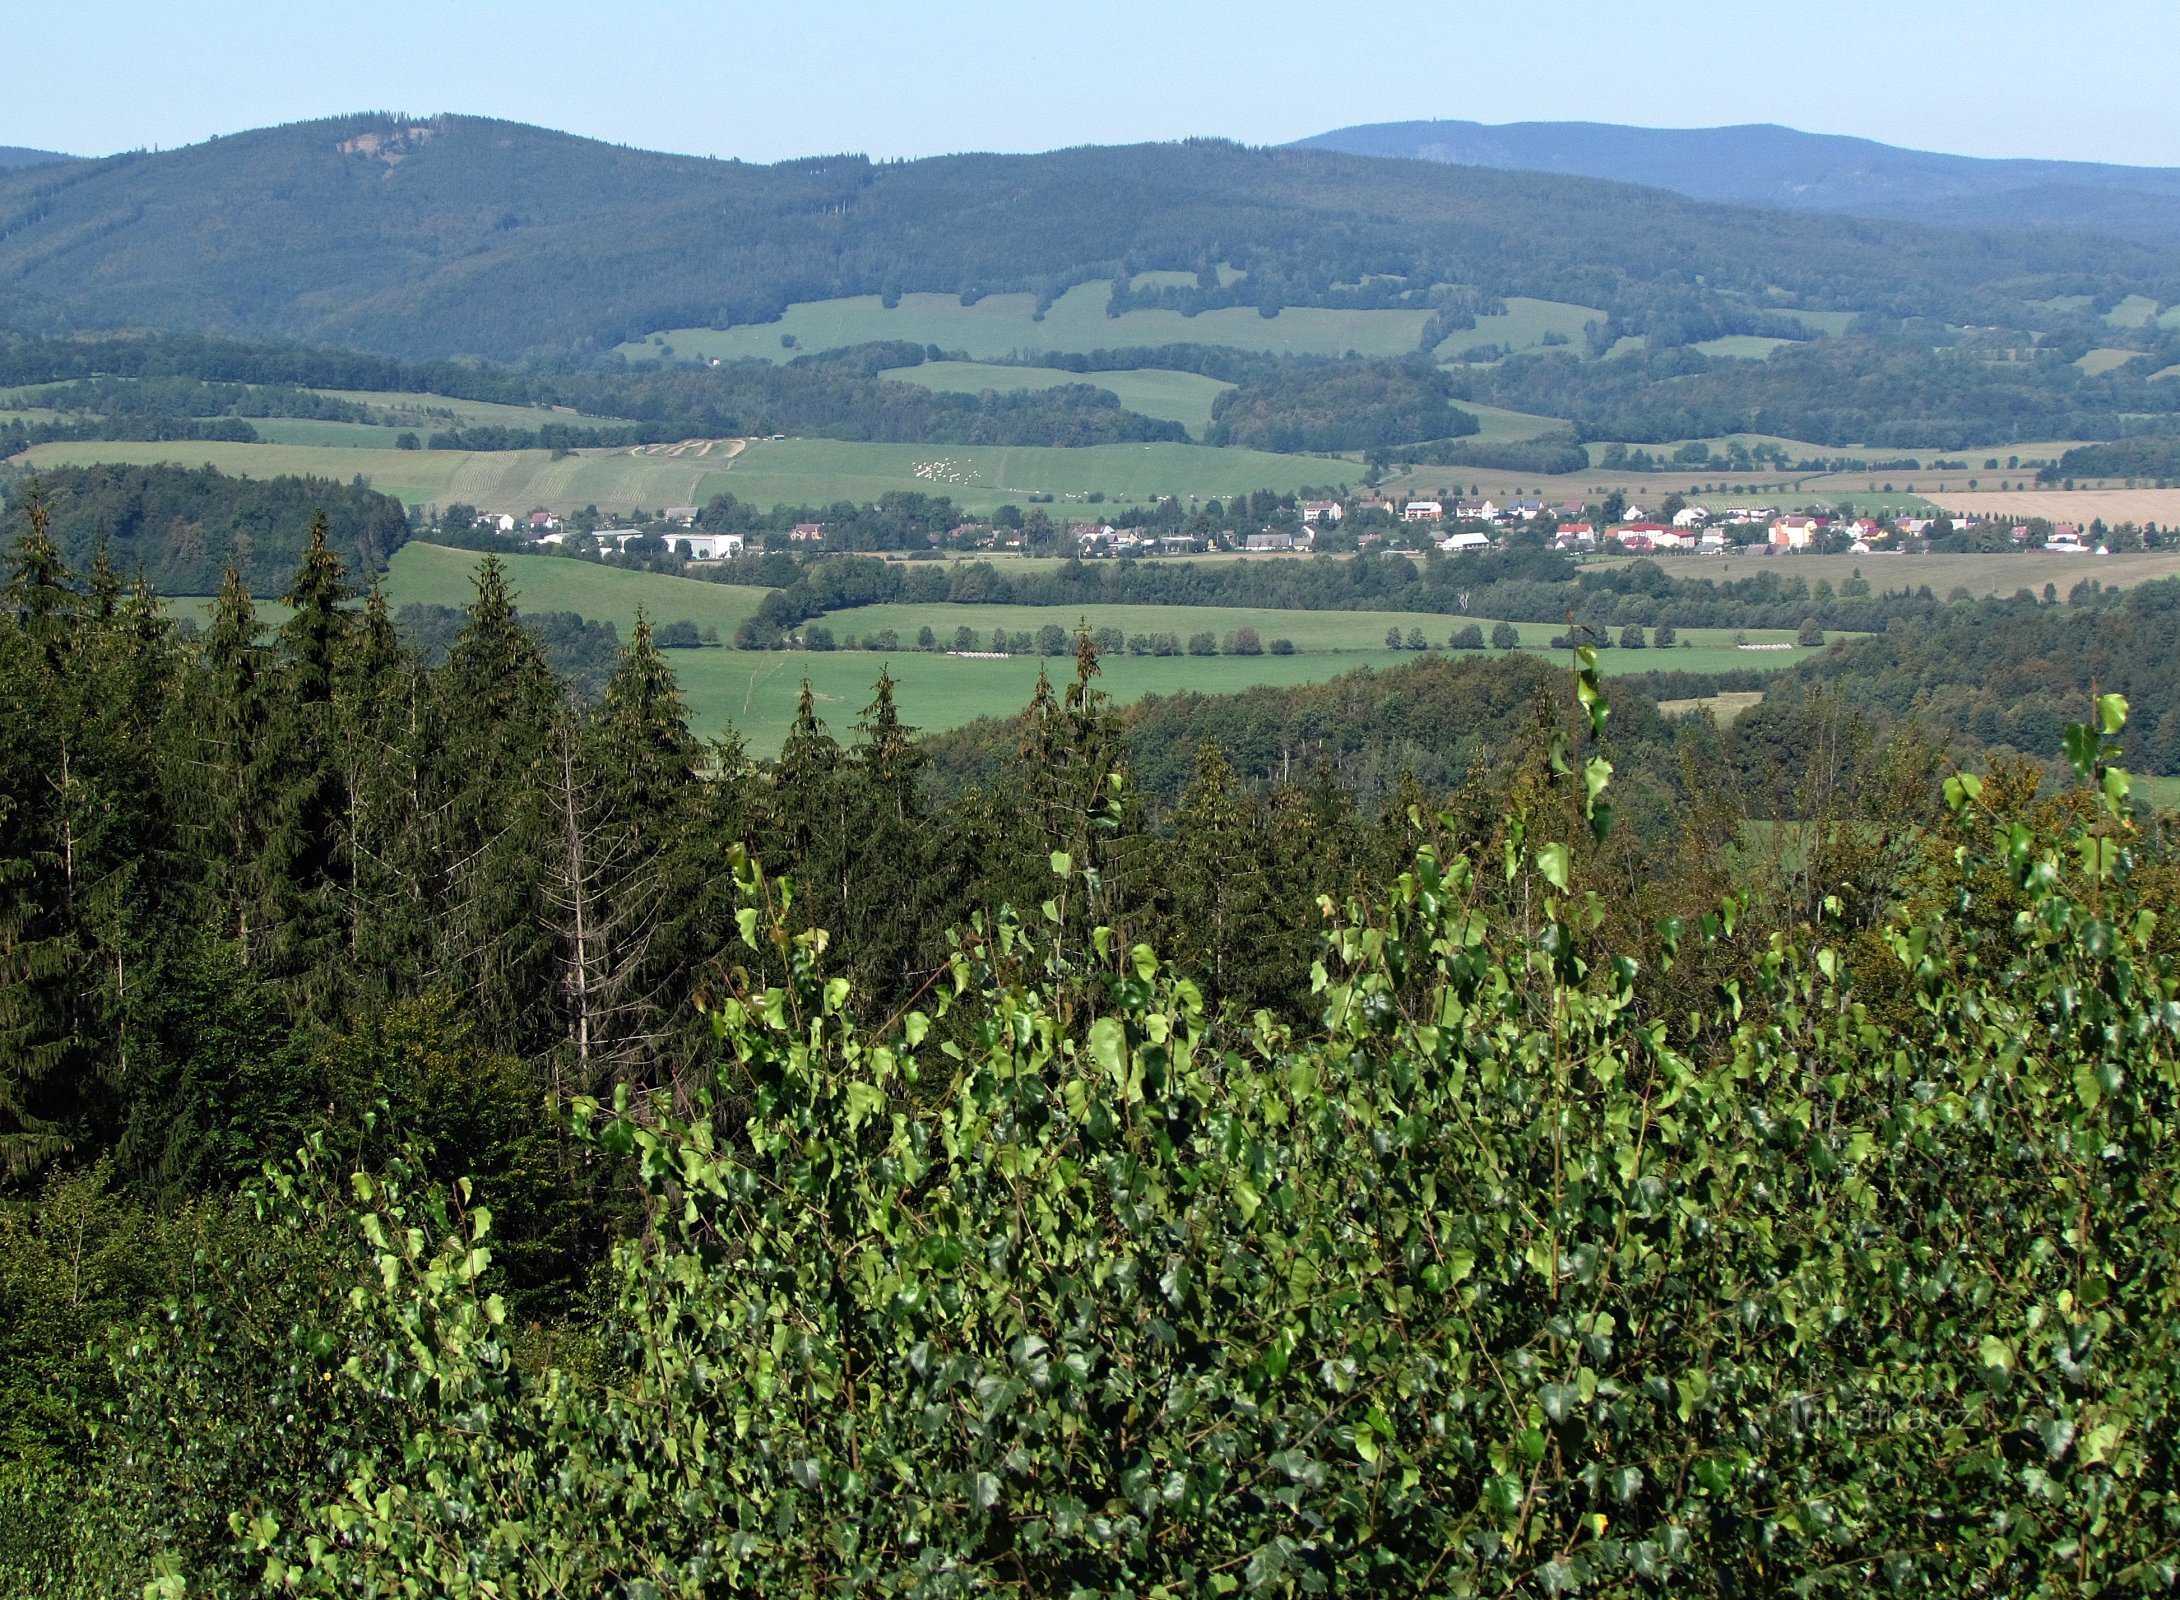 Θέα από το Zhulové vrch